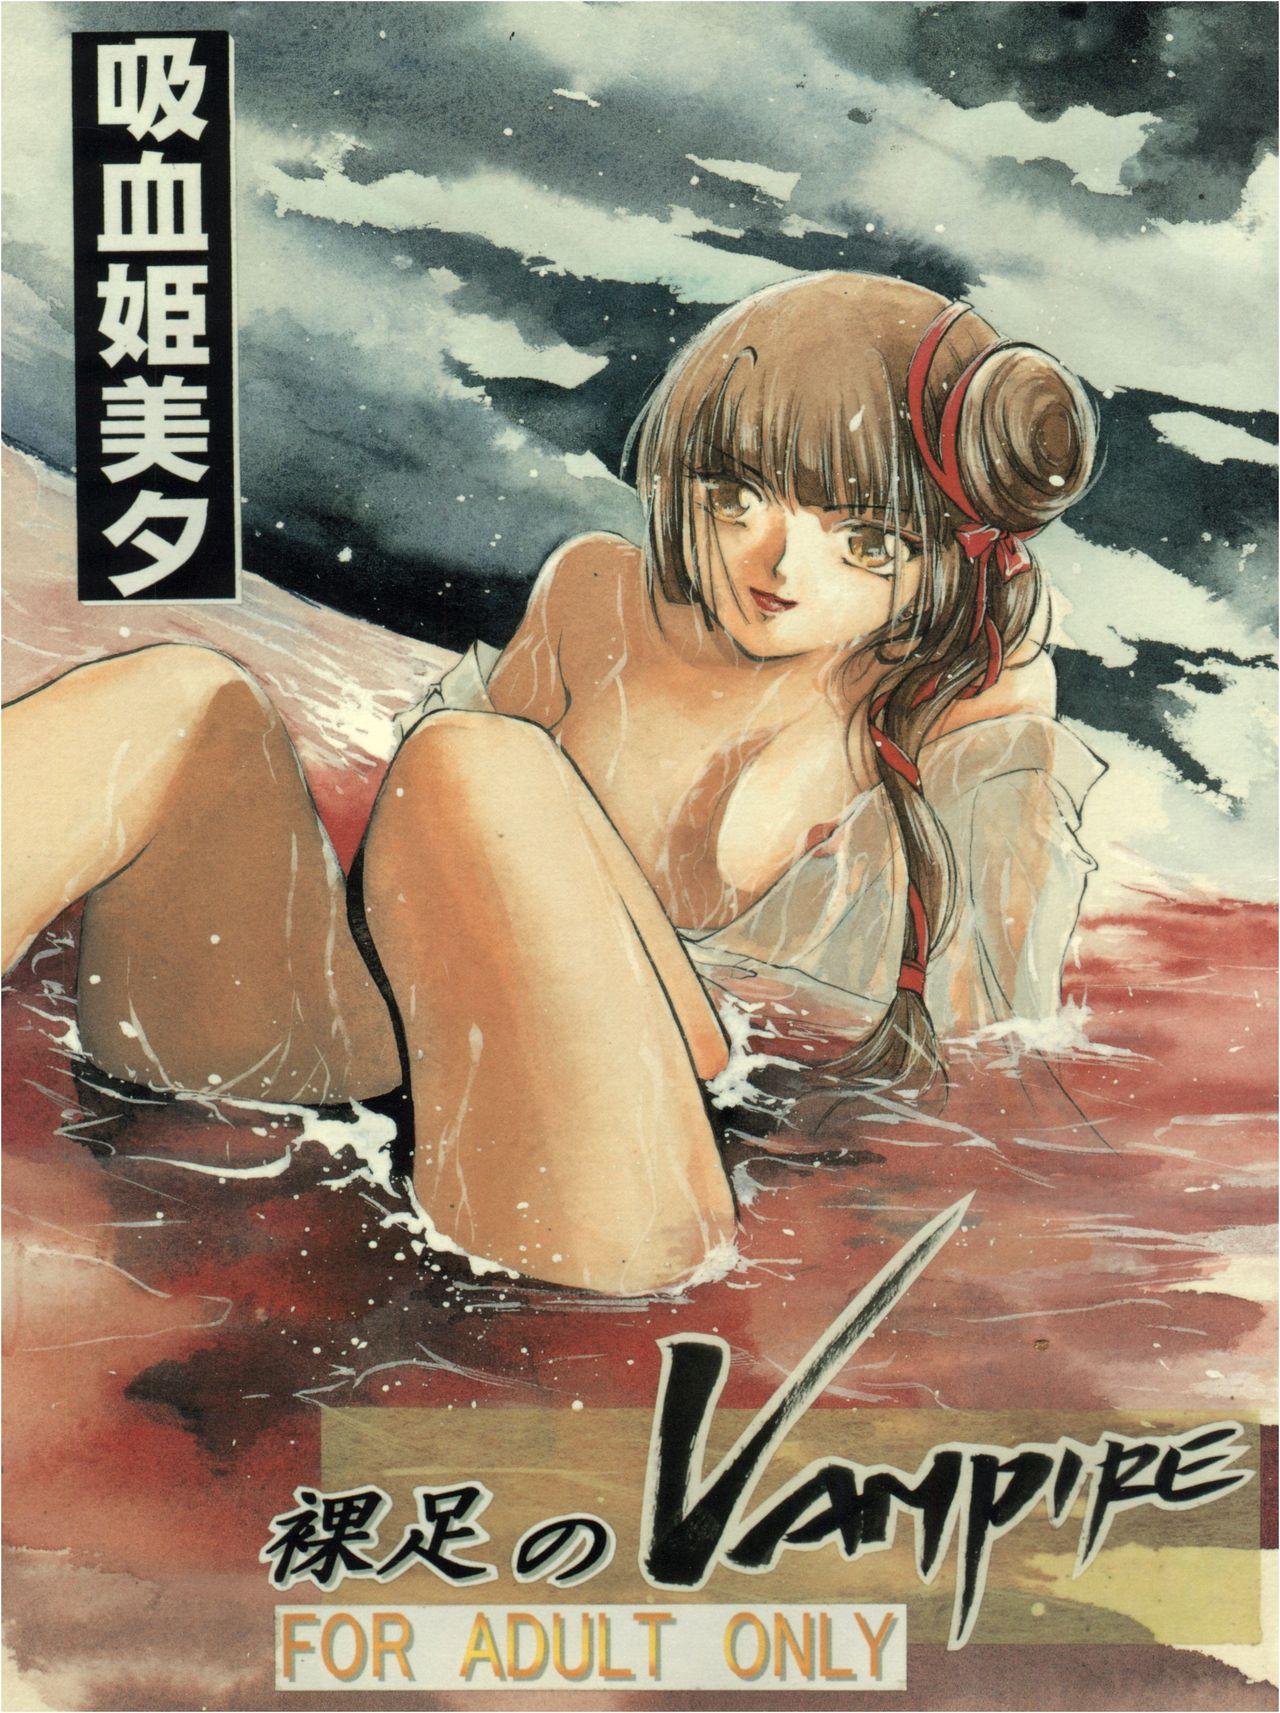 Hadashi no Vampire 0